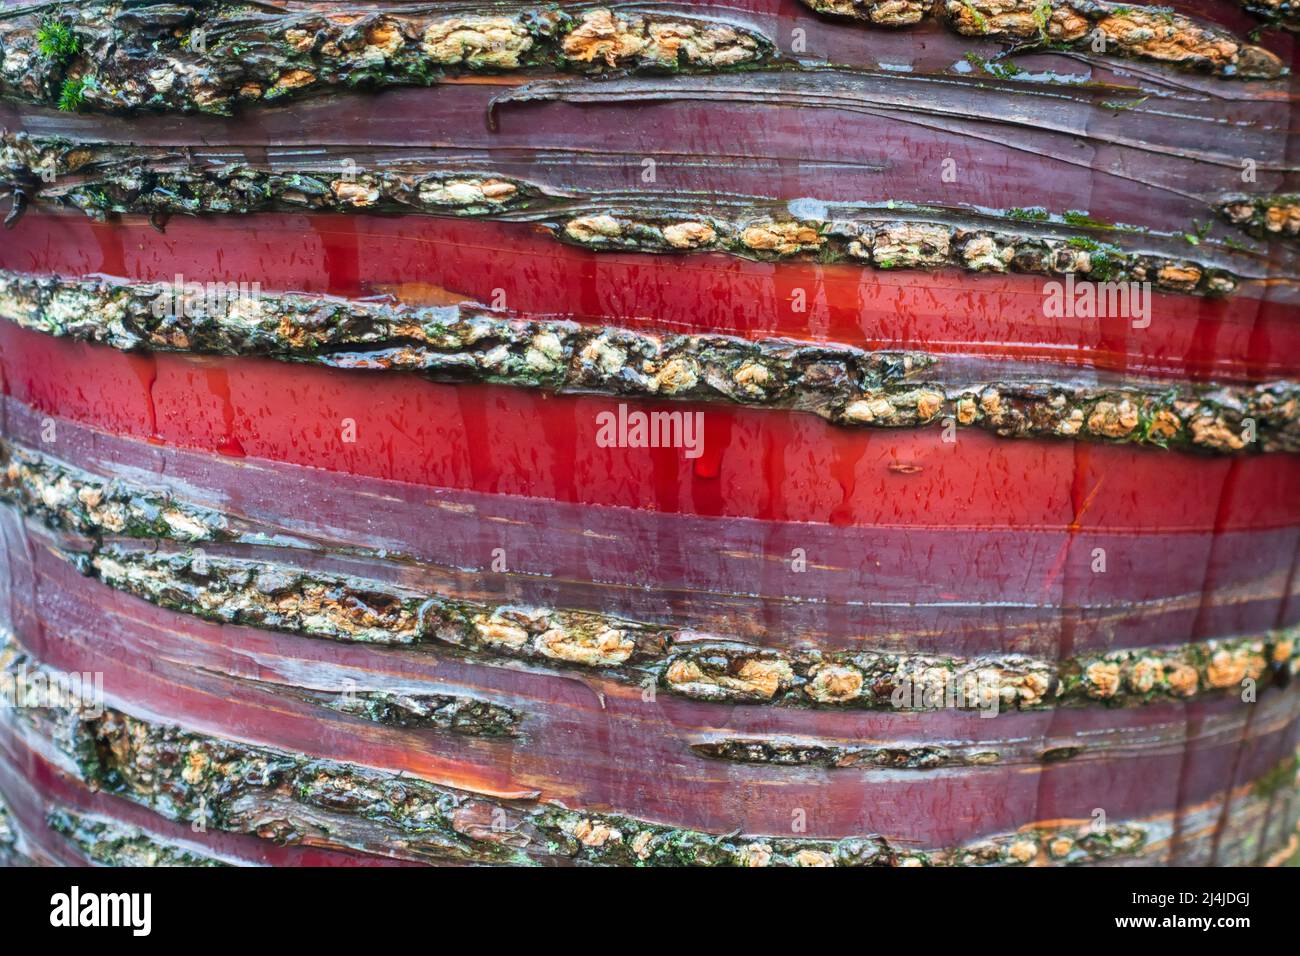 Ciliegia tibetana, Prunus serrula. Corteccia rossa brillante e colorata del bellissimo Ciliegio Tibetano in un pomeriggio bagnato. Foto Stock